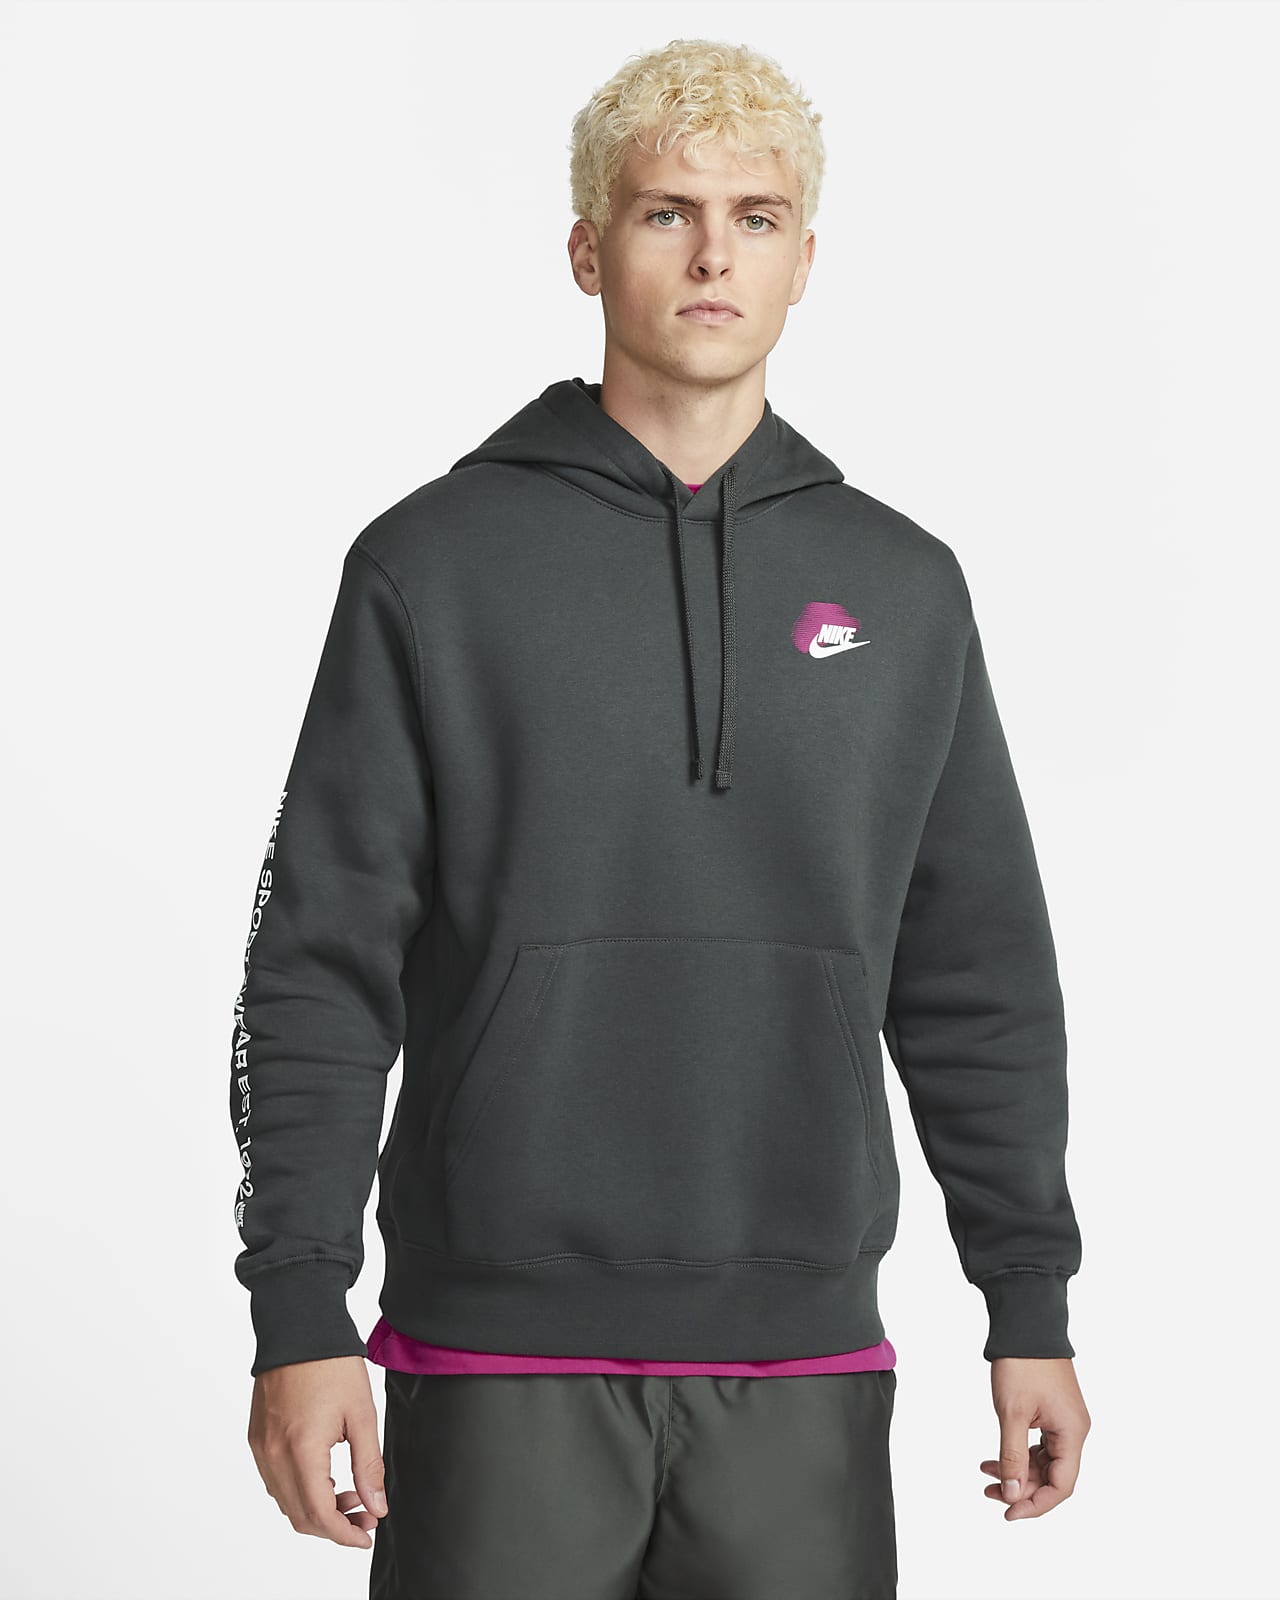 Exactamente Avispón Kosciuszko Nike Sportswear Standard Issue Sudadera con capucha de tejido Fleece -  Hombre. Nike ES